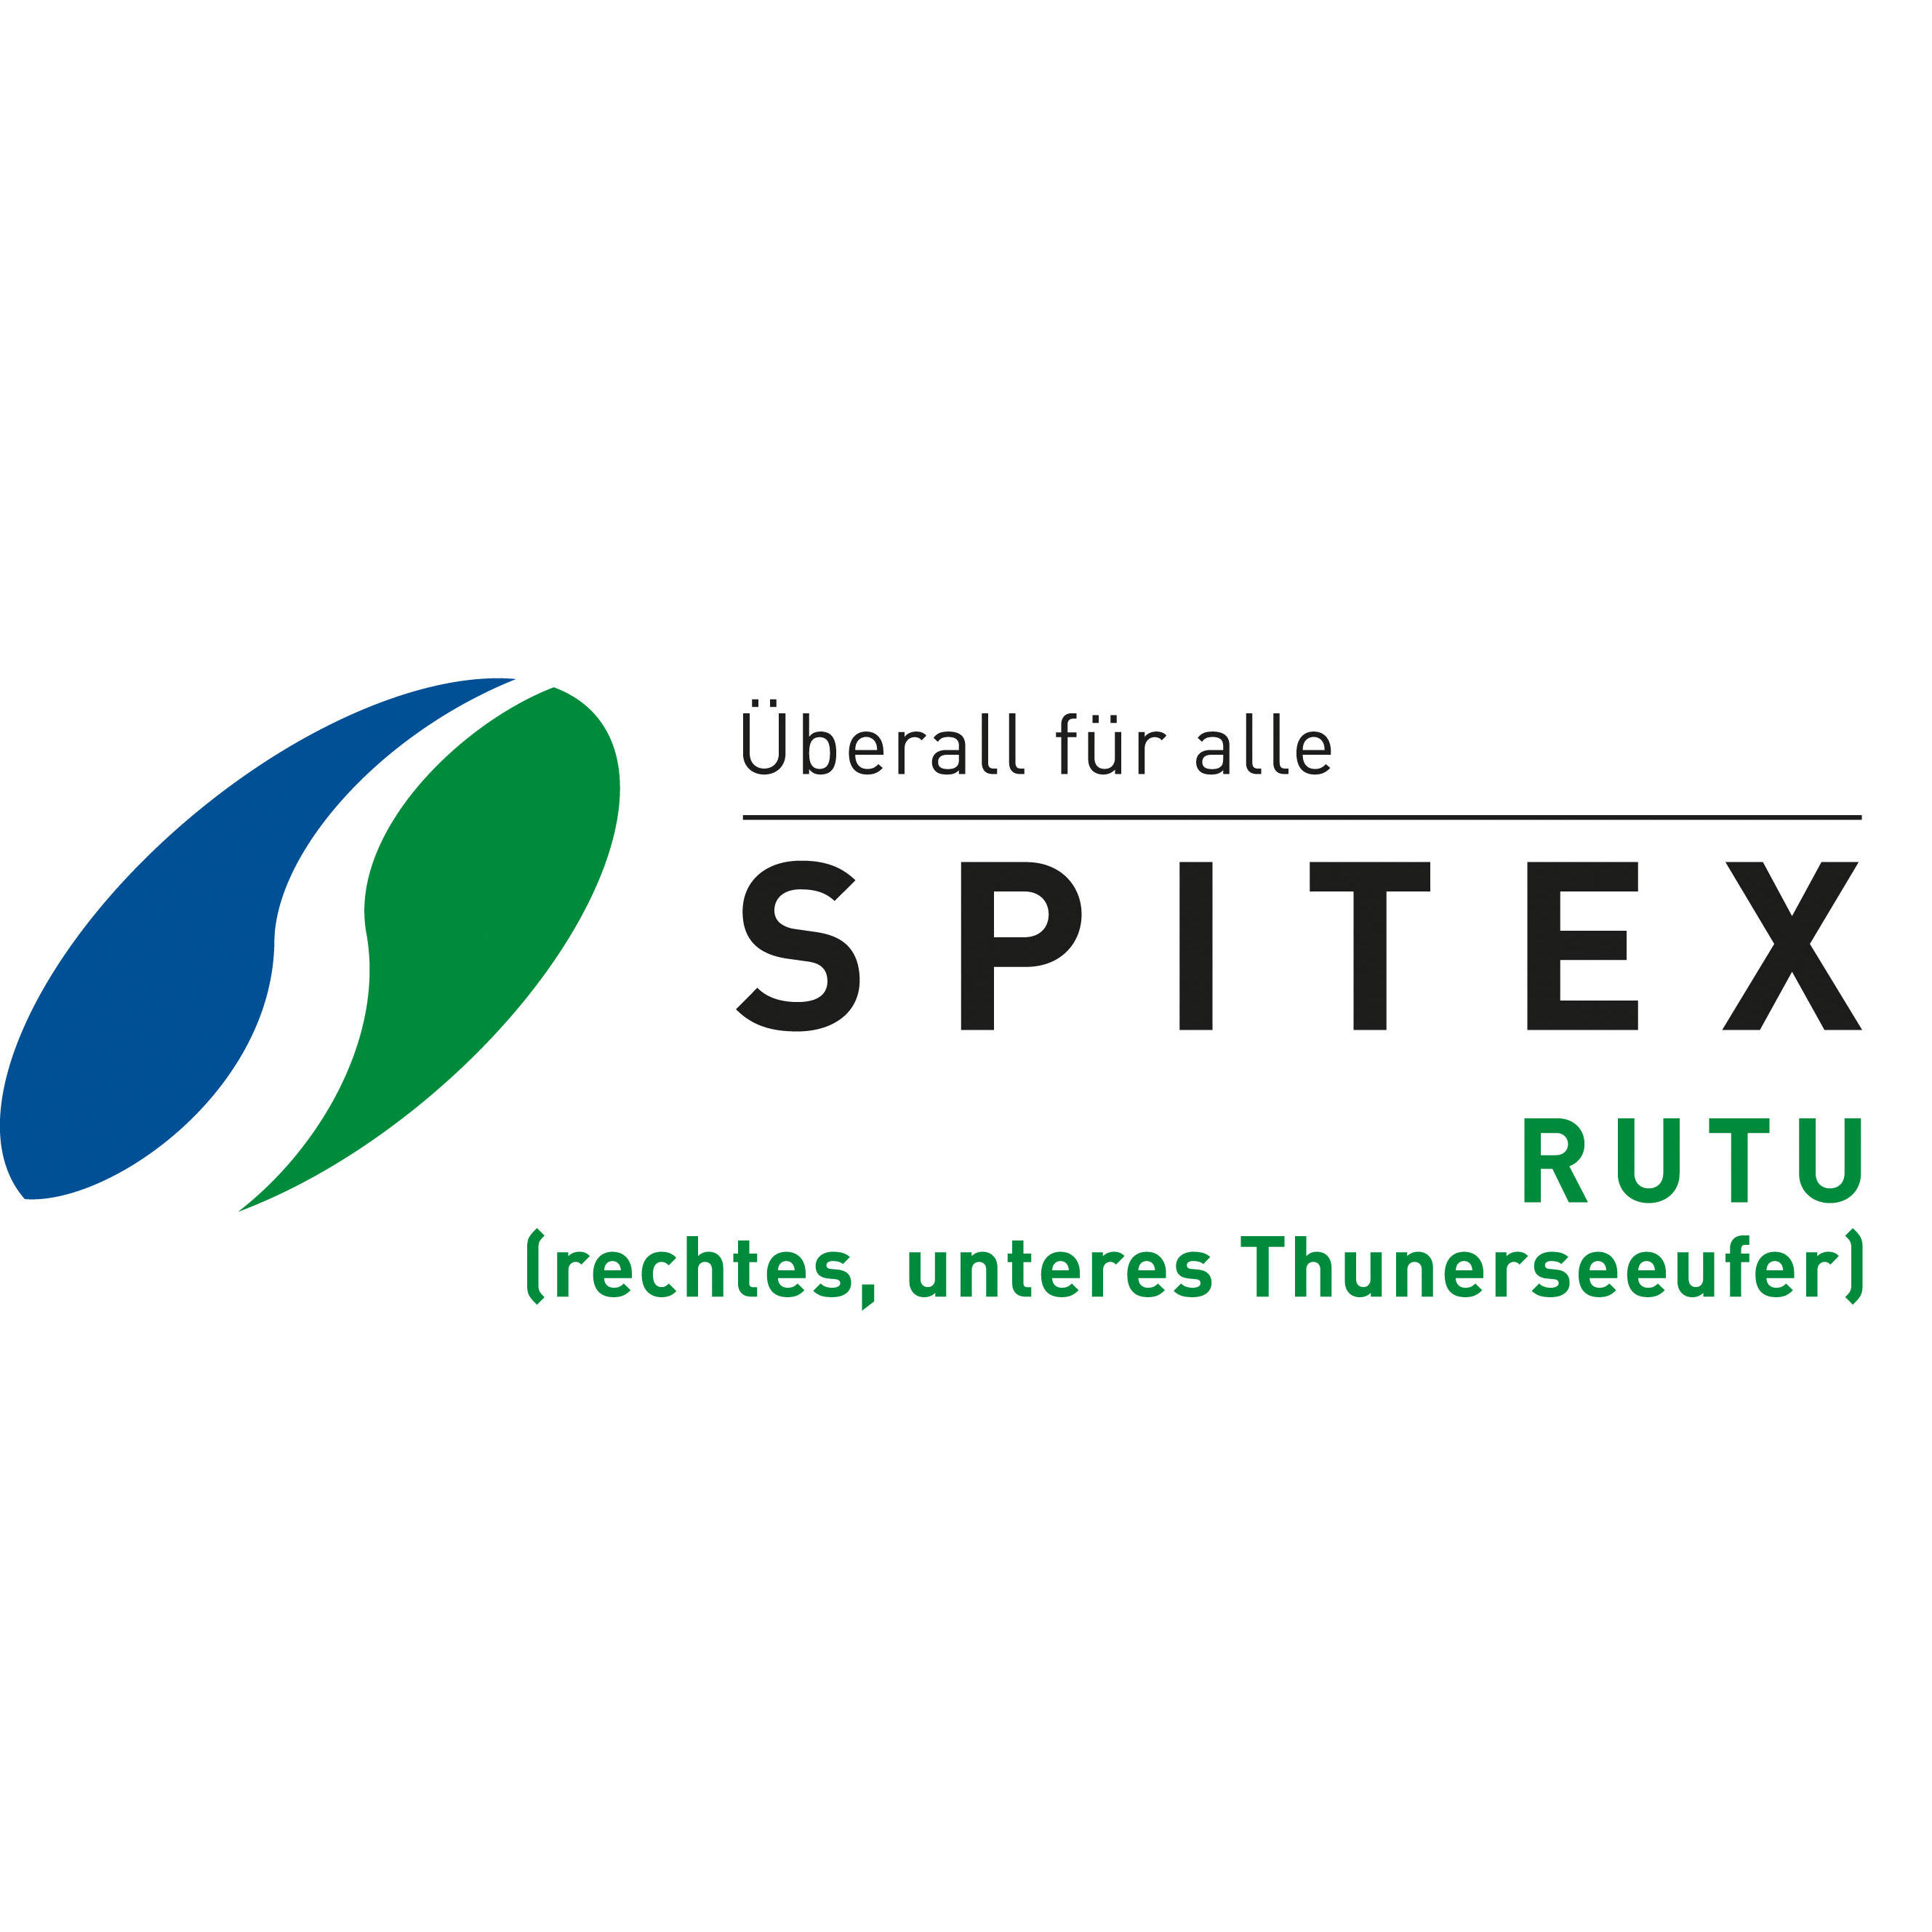 SPITEX-Dienste RUTU (rechtes, unteres Thunerseeufer